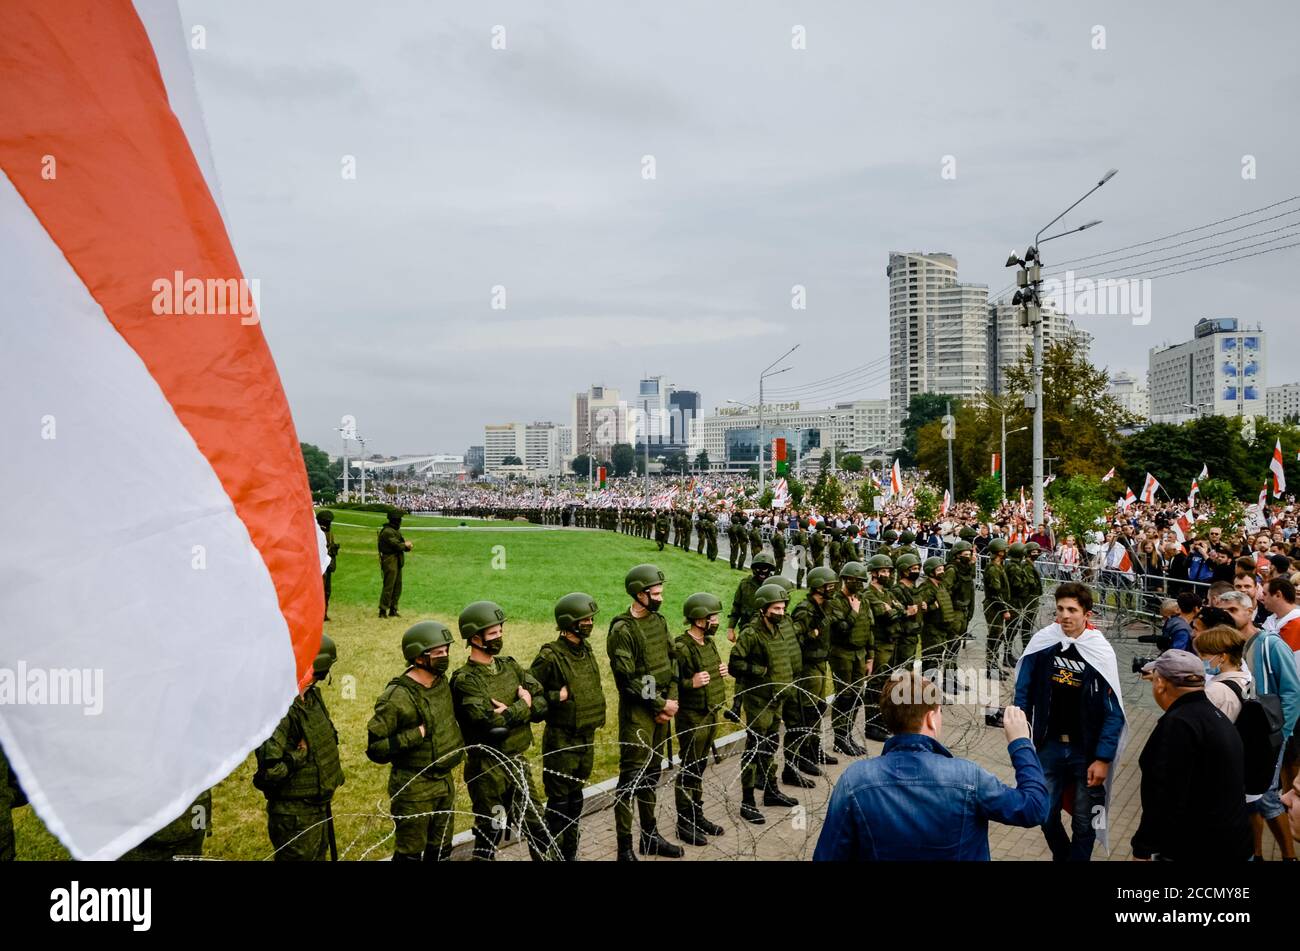 Minsk, Bielorrusia - 23 de agosto de 2020: El pueblo bielorruso participa en protestas pacíficas contra unidades especiales de policía y soldados después de la elección presidencial Foto de stock